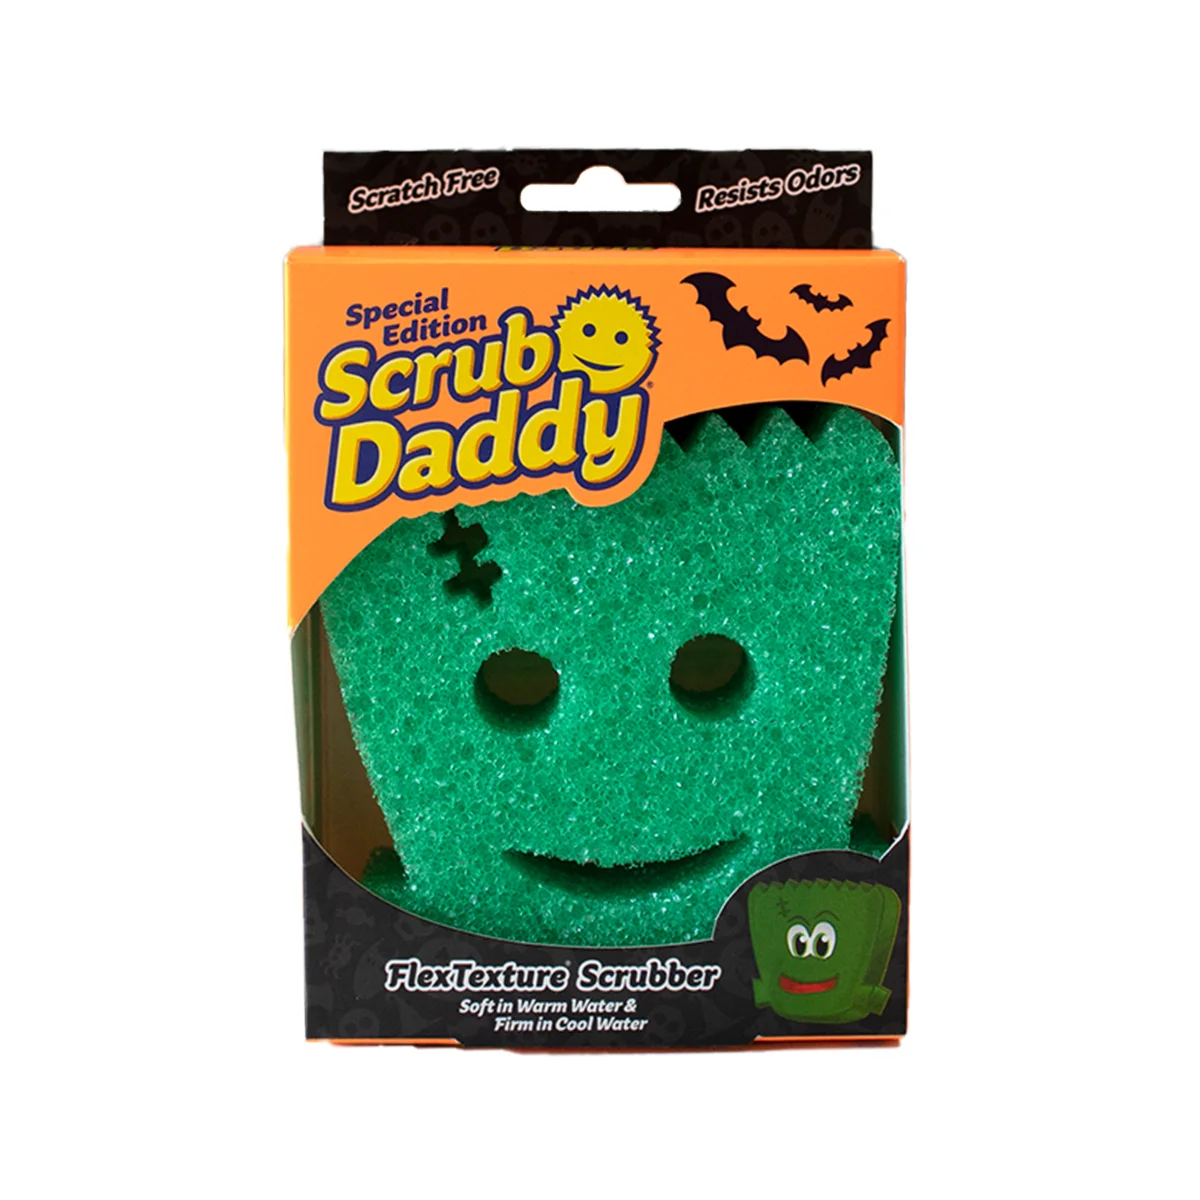 Scrub Daddy Special Edition Halloween Sponges